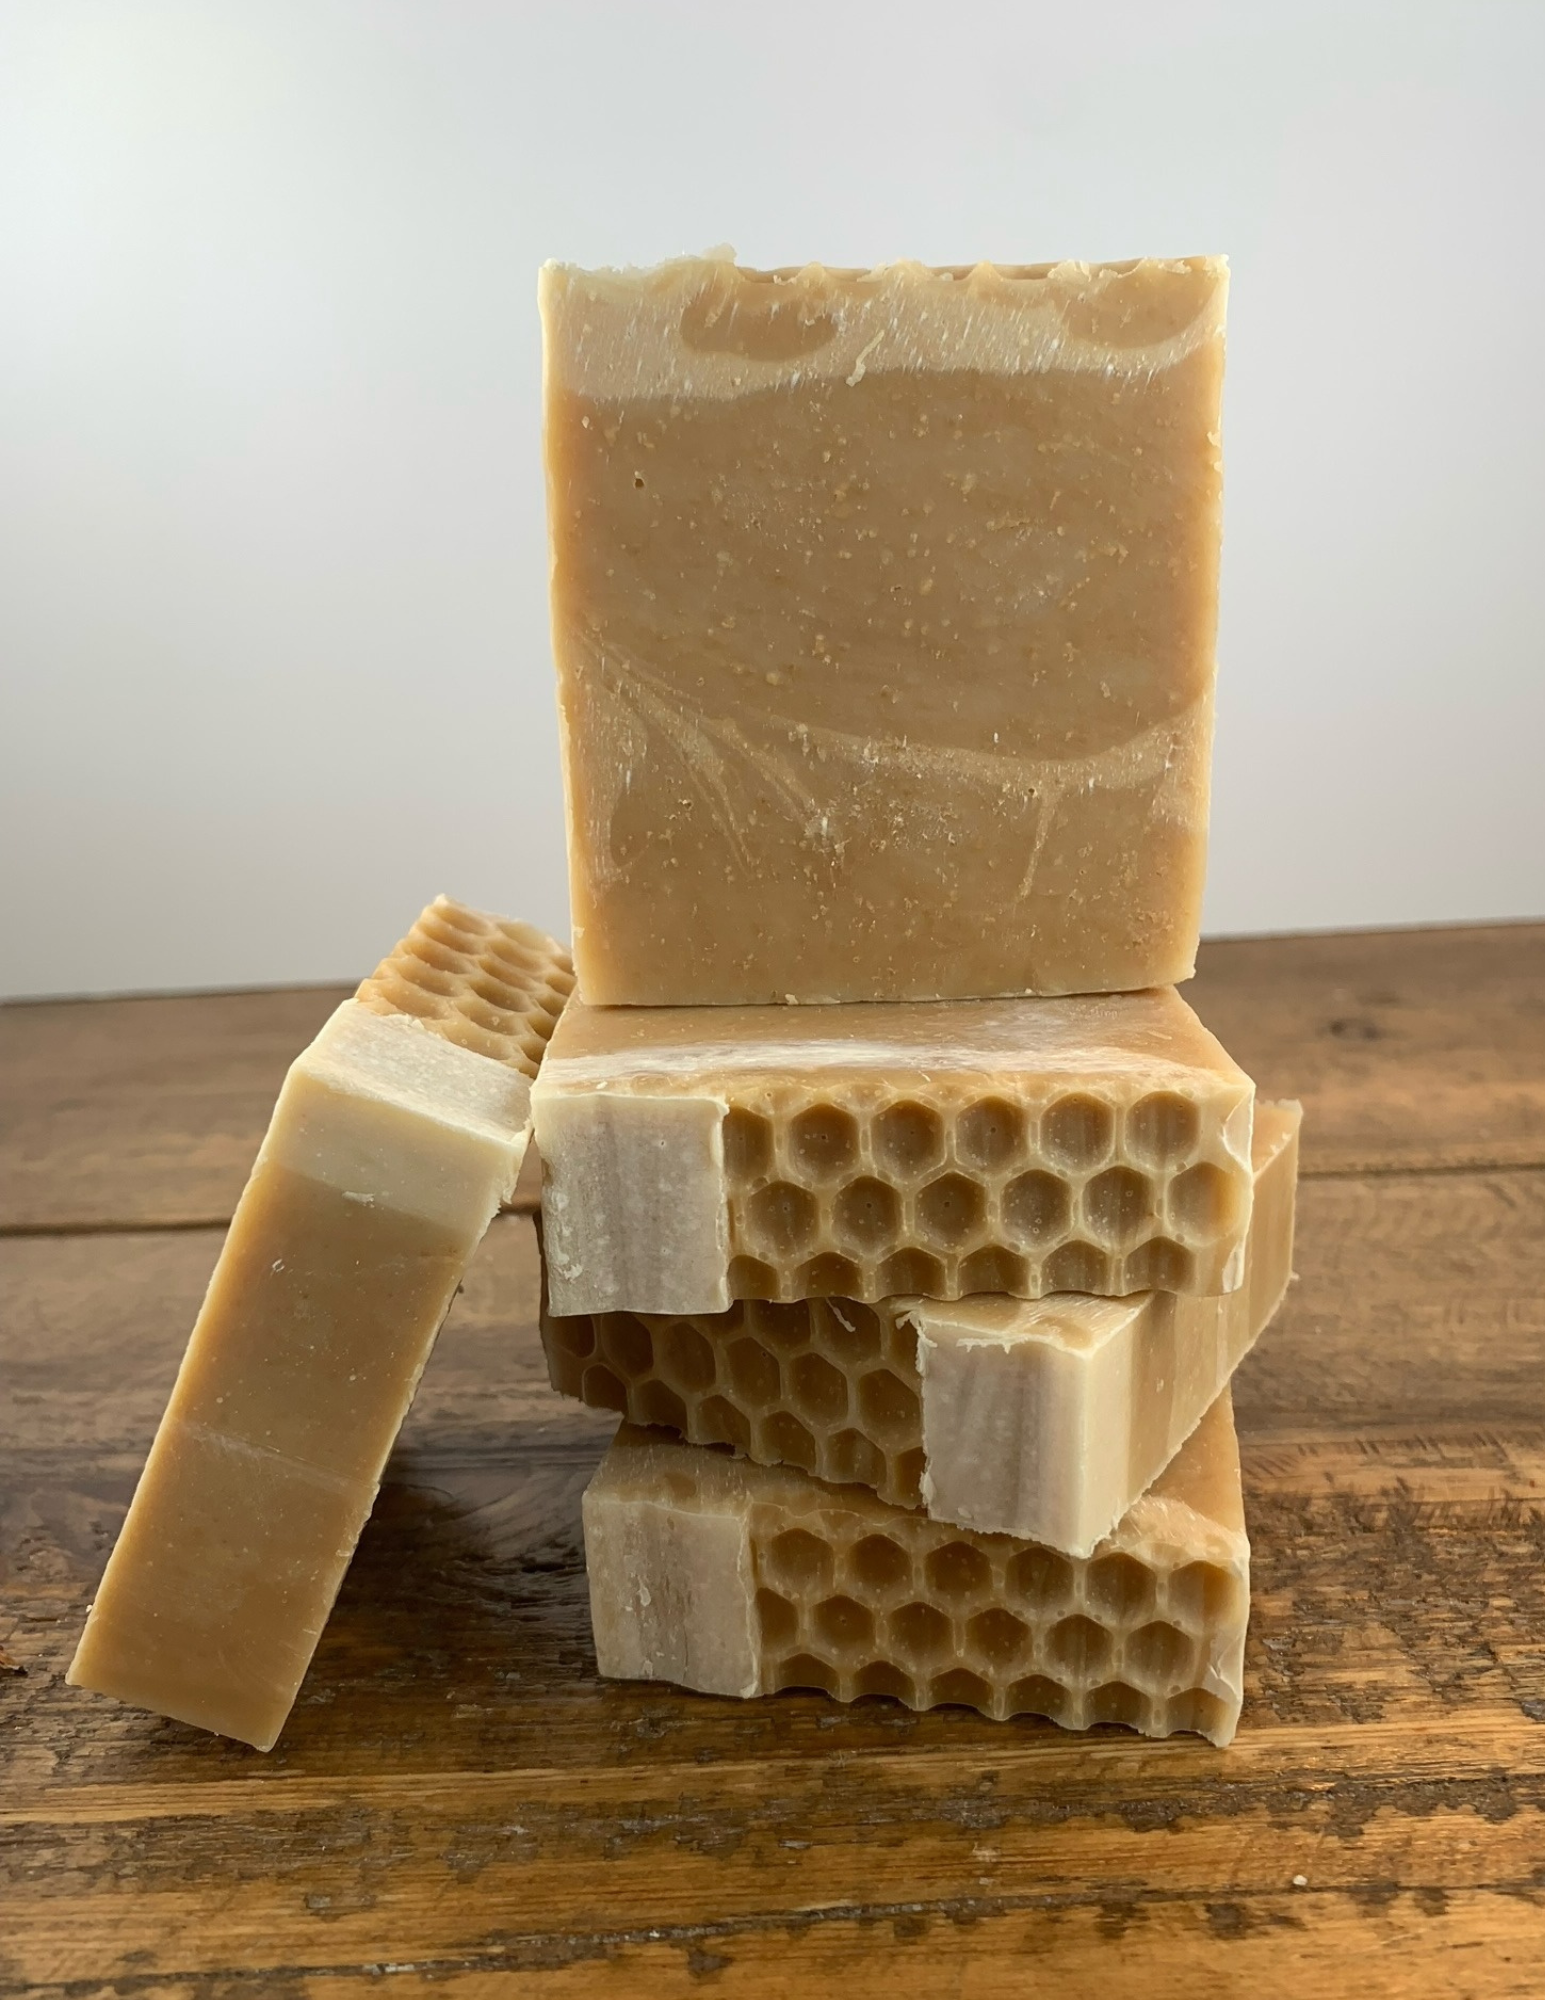 Honey Soap & Handmade Bath Bombs